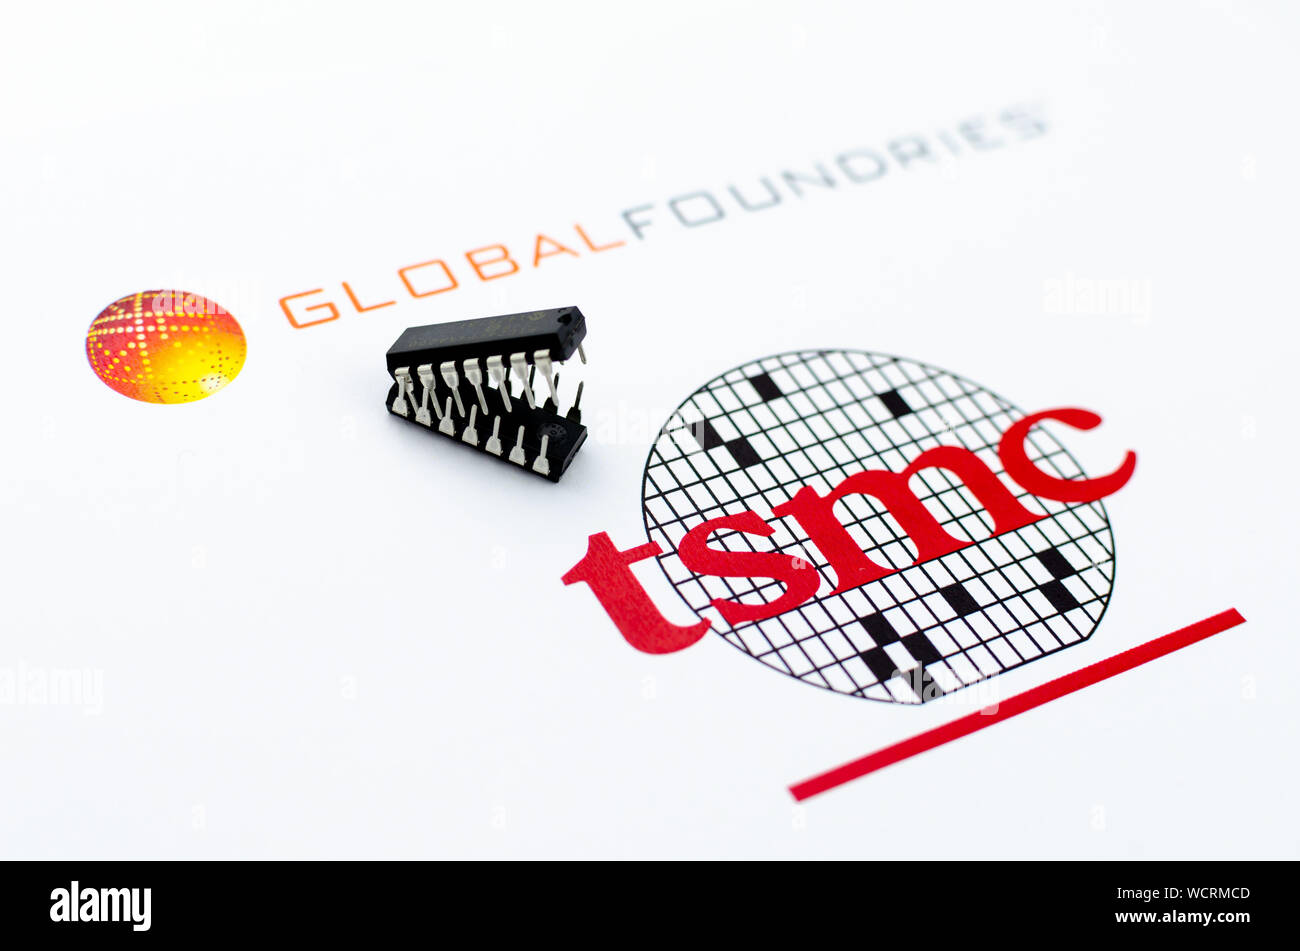 Fundiciones global vs. TSMC. Imprimir logotipos de empresas de semiconductores y dos microchips en la forma de atacar las mordazas. Fotografía conceptual. Foto de stock